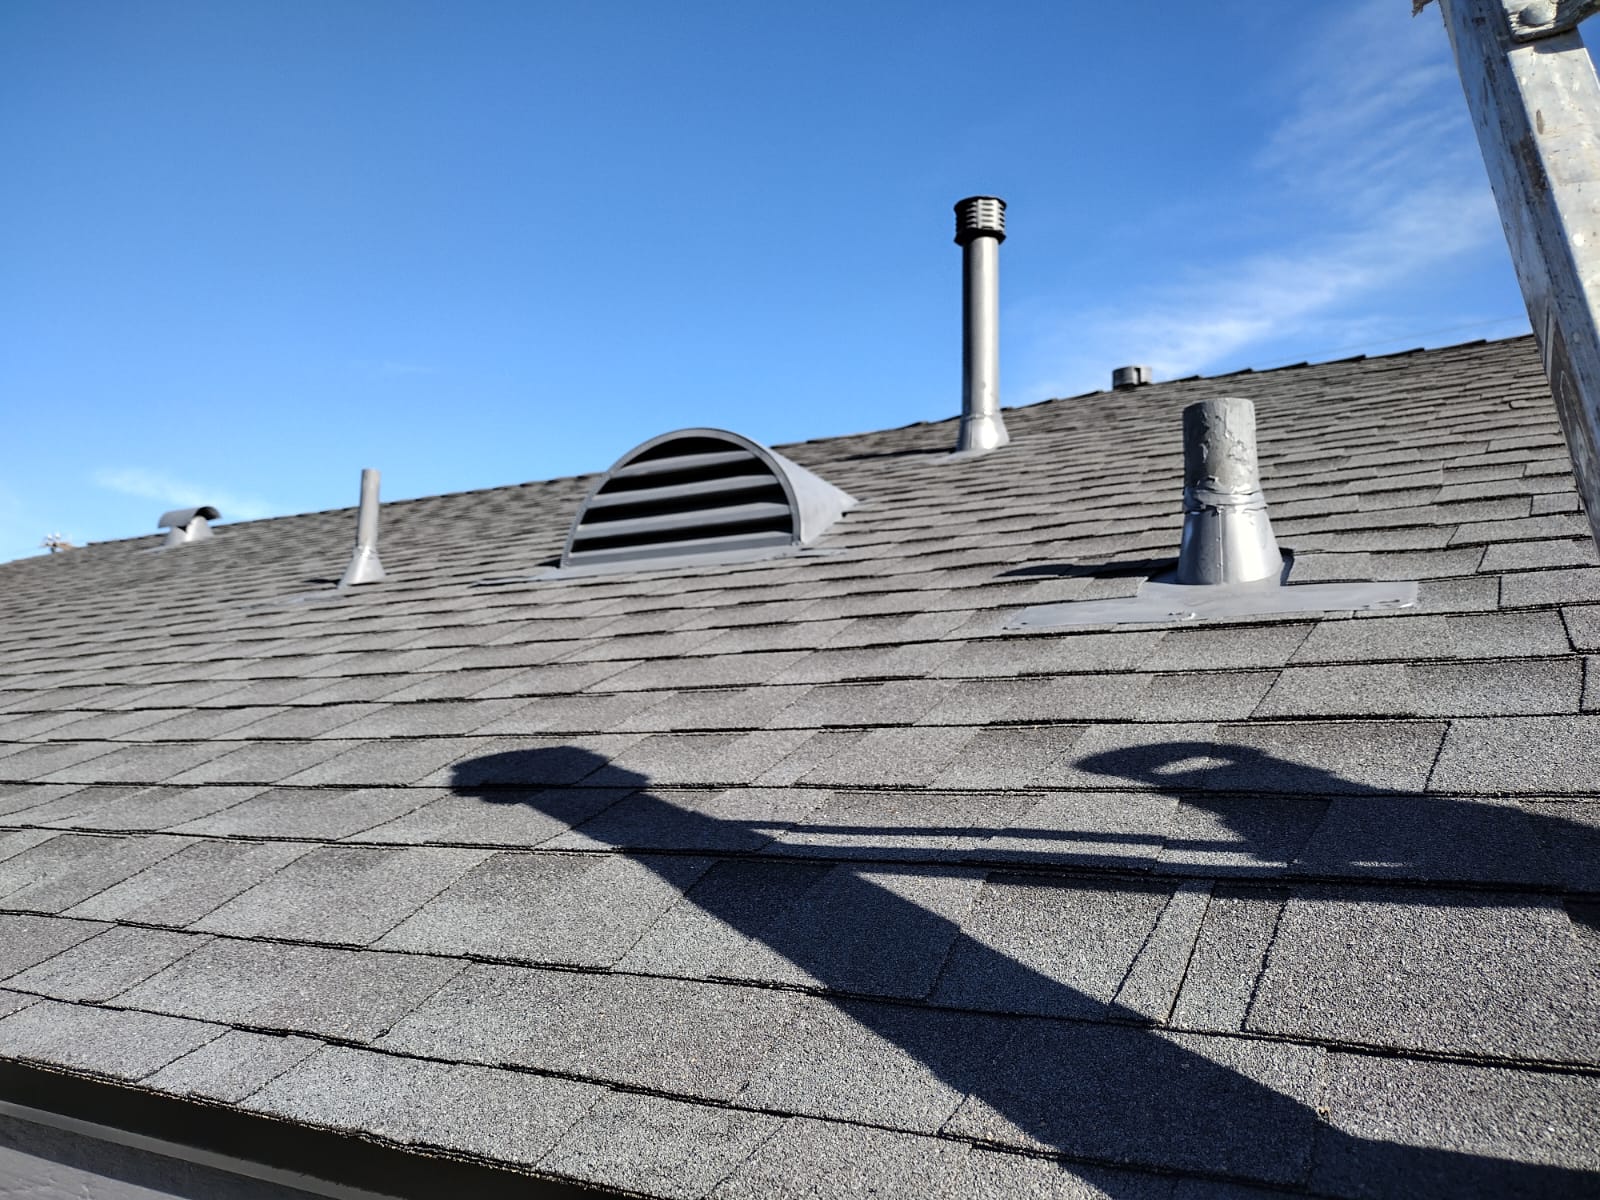 Centennial Roofing LLC - ervicio de reparación e instalación de techos